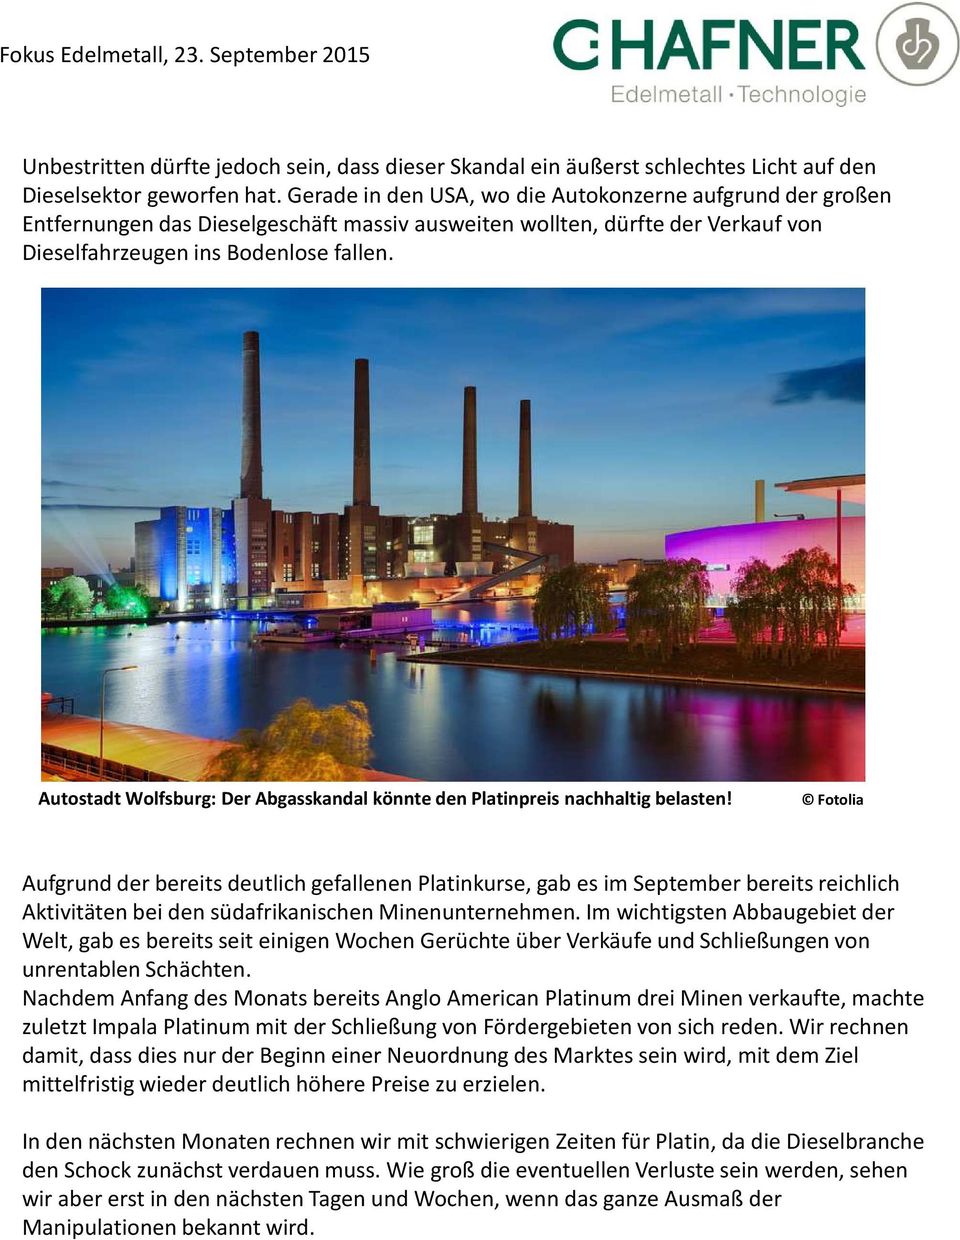 Autostadt Wolfsburg: Der Abgasskandal könnte den Platinpreis nachhaltig belasten!